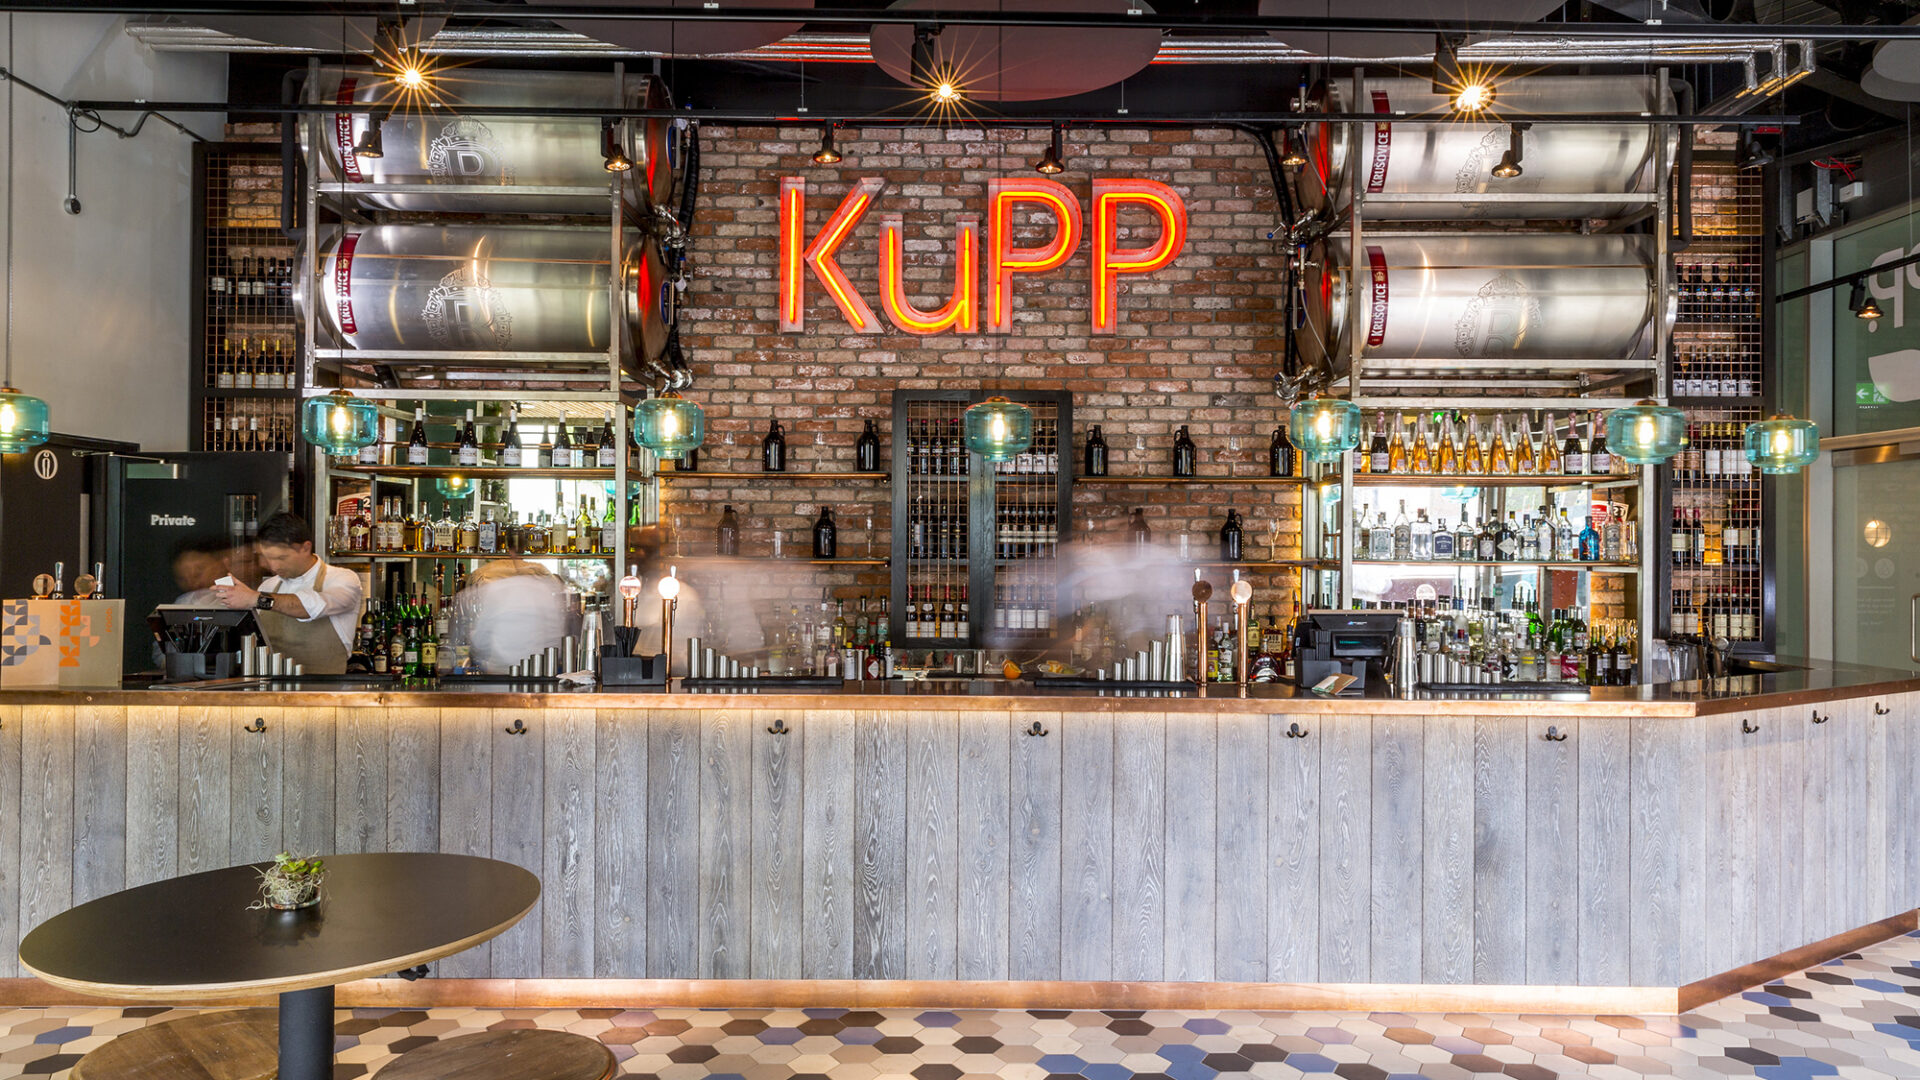 KuPP scandi restaurant interior, Merchant Square